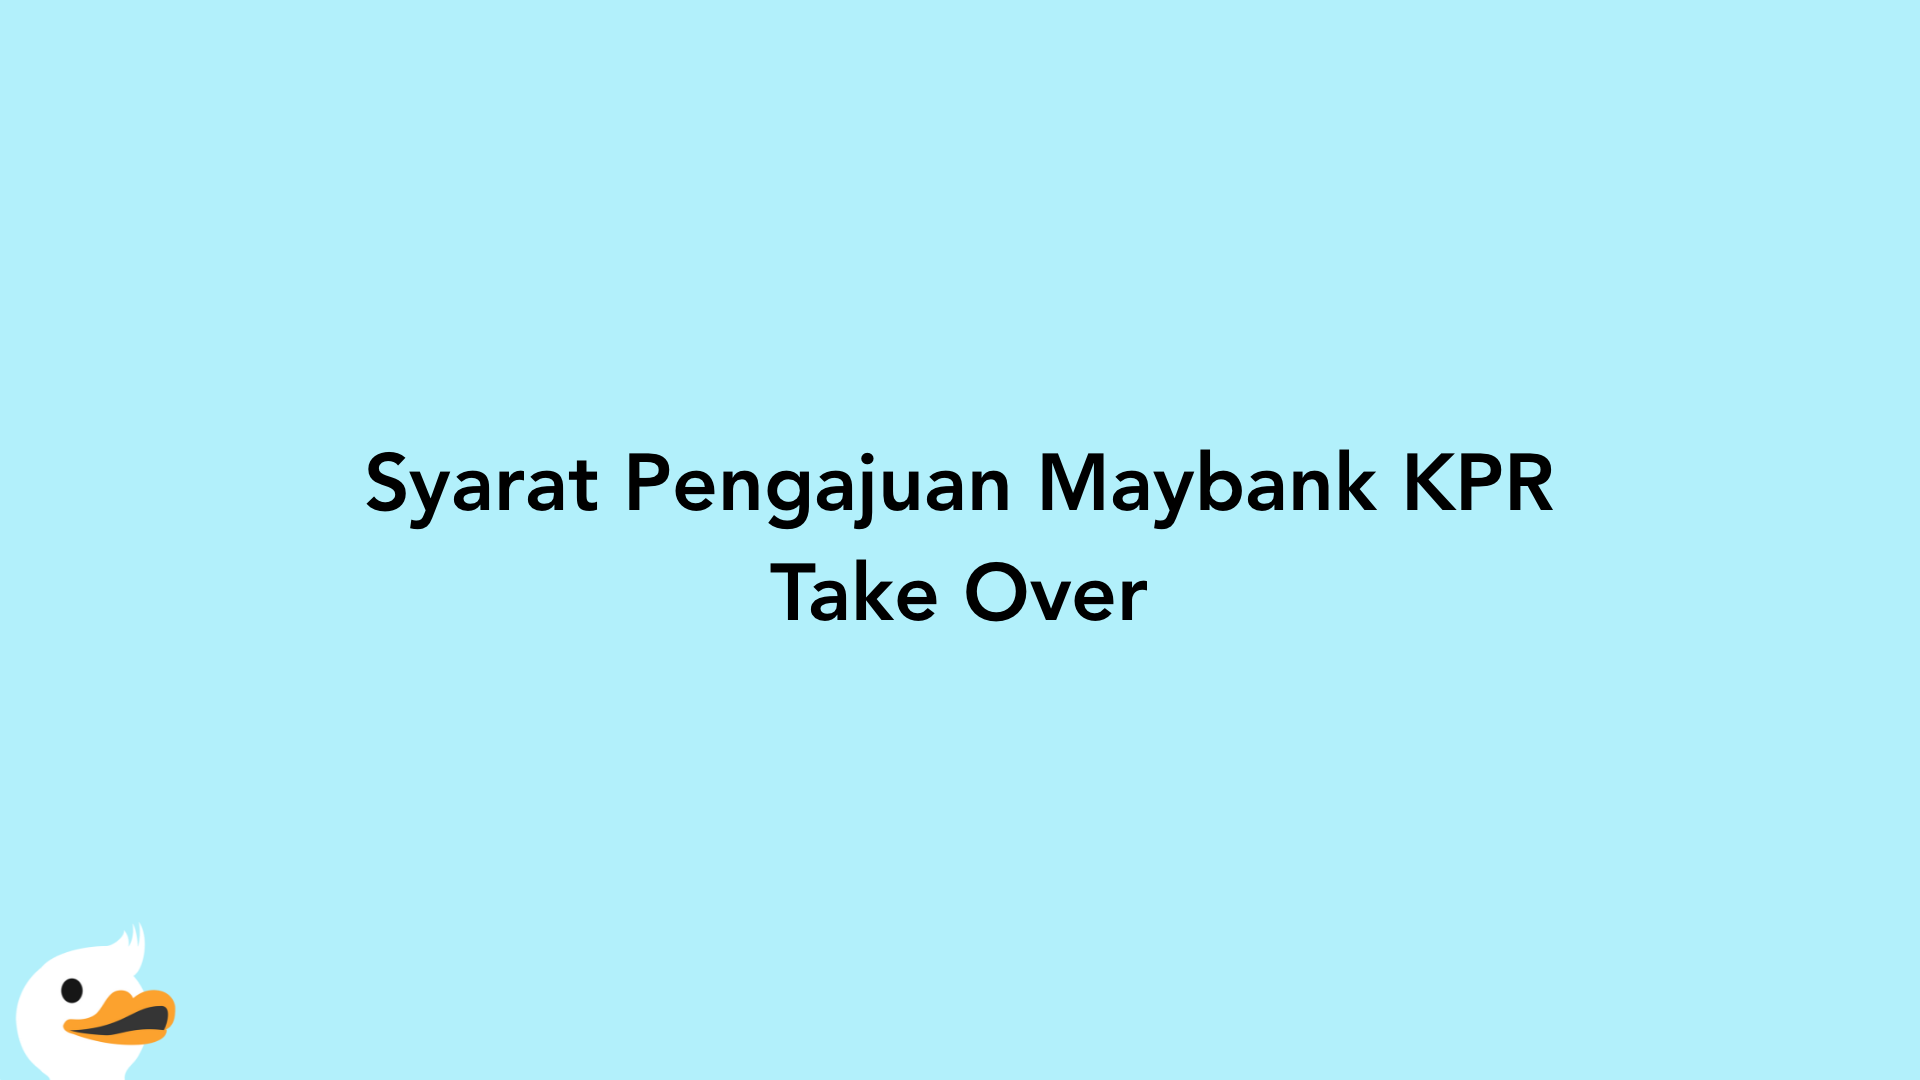 Syarat Pengajuan Maybank KPR Take Over